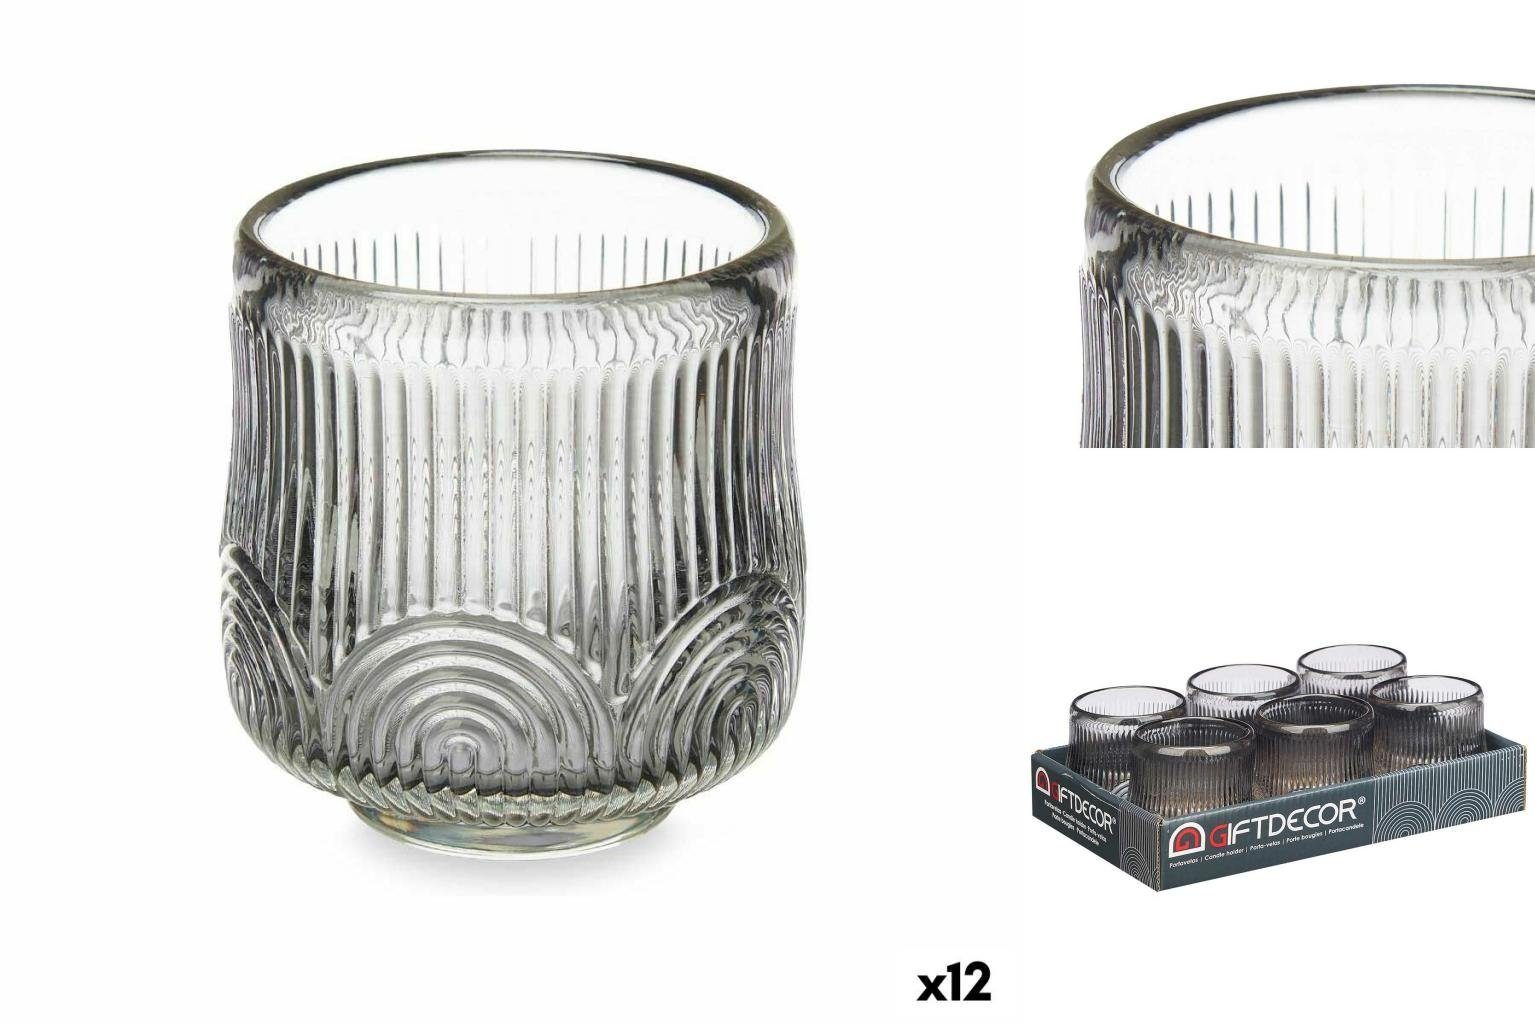 Gift Decor Windlicht Kerzenschale Streifen Grau Glas 7,5 x 7,8 x 7,5 cm 12 Stück